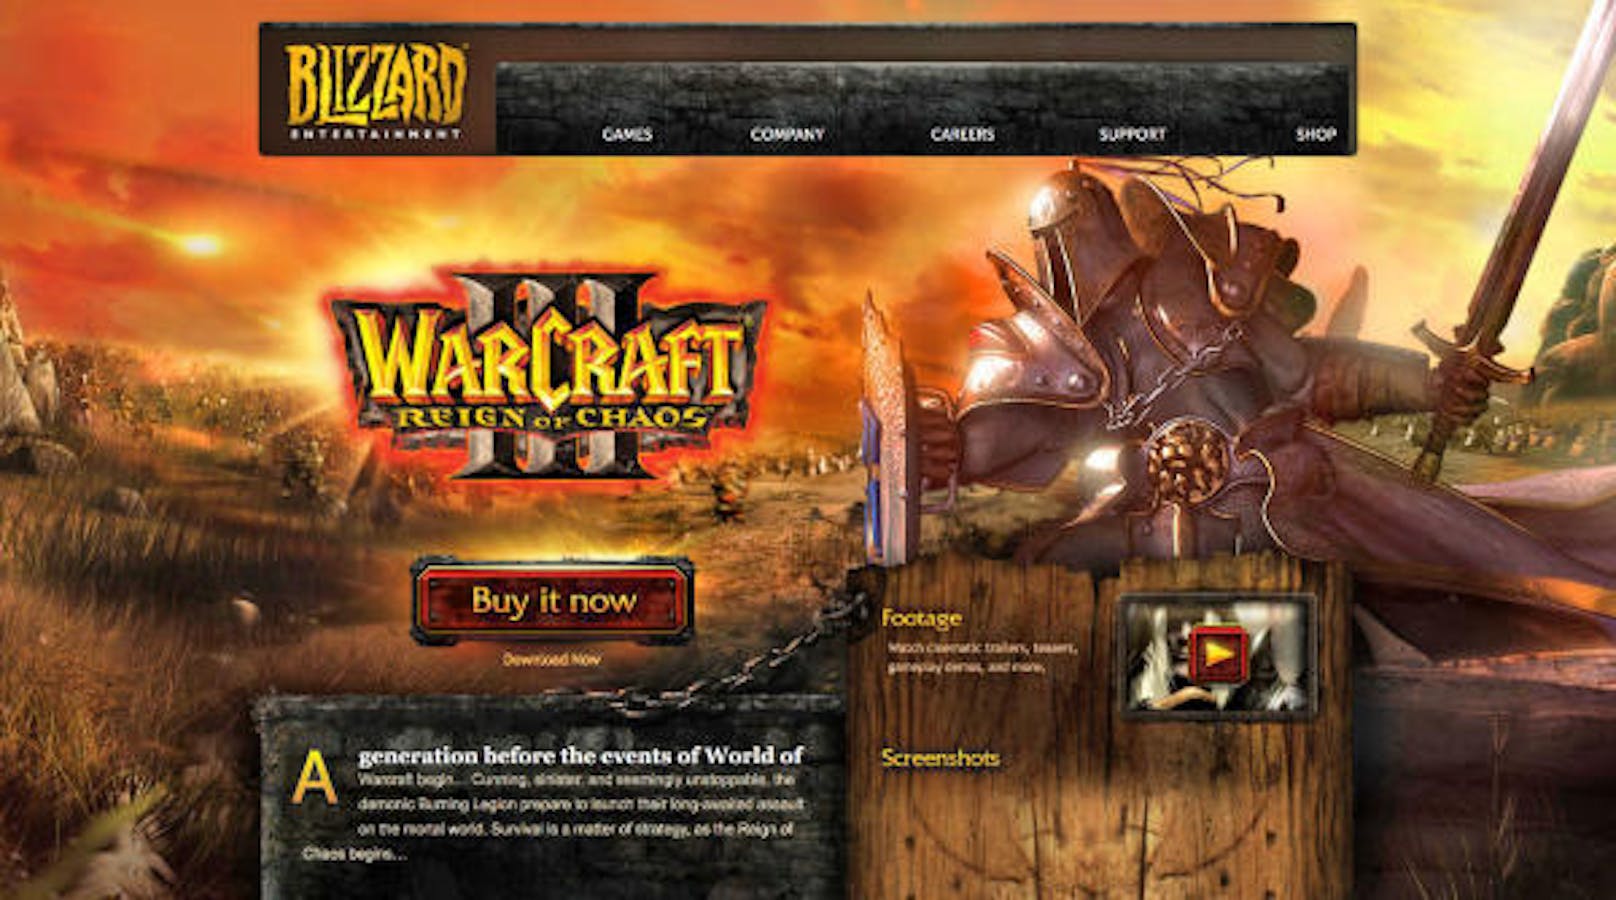 Der Spieleentwickler Blizzard verpasst dem 16 Jahre alten Spiel Warcraft III eine Rundumerneuerung. Das Update bietet erstmals eine verzerrfreie Darstellung auf Flachbildschirmen. Als der Titel 2002 erstmals auf den Markt kam, waren die meisten Computer noch mit Röhrenbildschirmen ausgestattet. Zudem können in Lobbys nun bis zu 24 Spieler teilnehmen. Auch wurden verschiedene Fehler korrigiert.